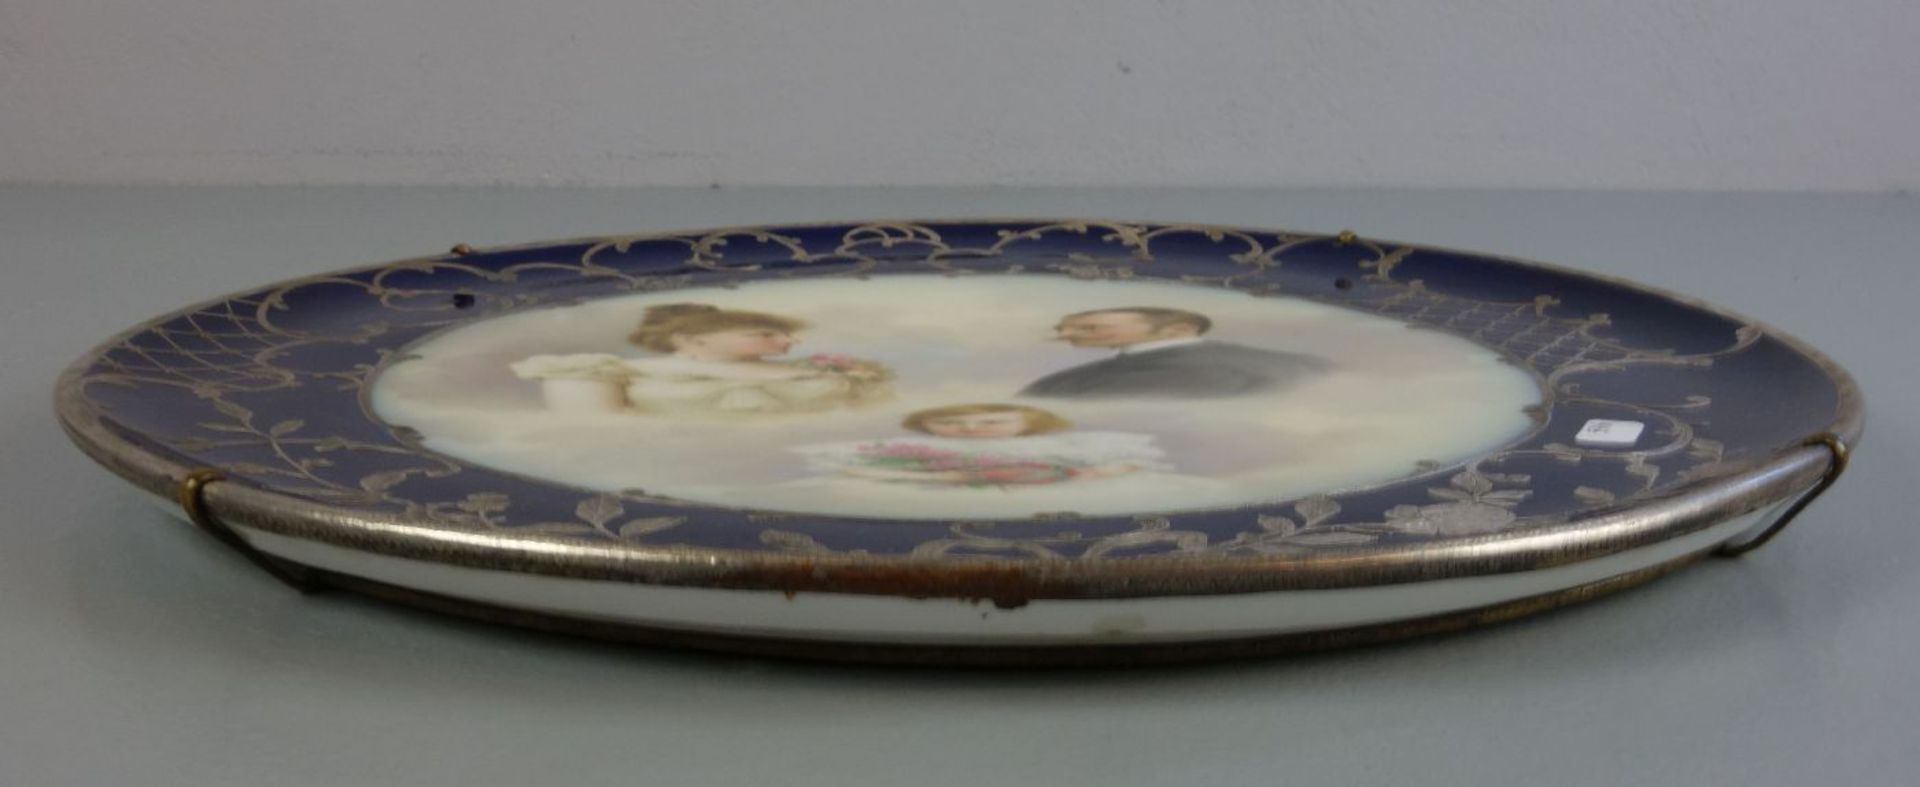 BILDTELLER / WANDTELLER / plate, Österreich - Wien, um 1900, Porzellan, glasurblau gemarkt mit - Bild 3 aus 4